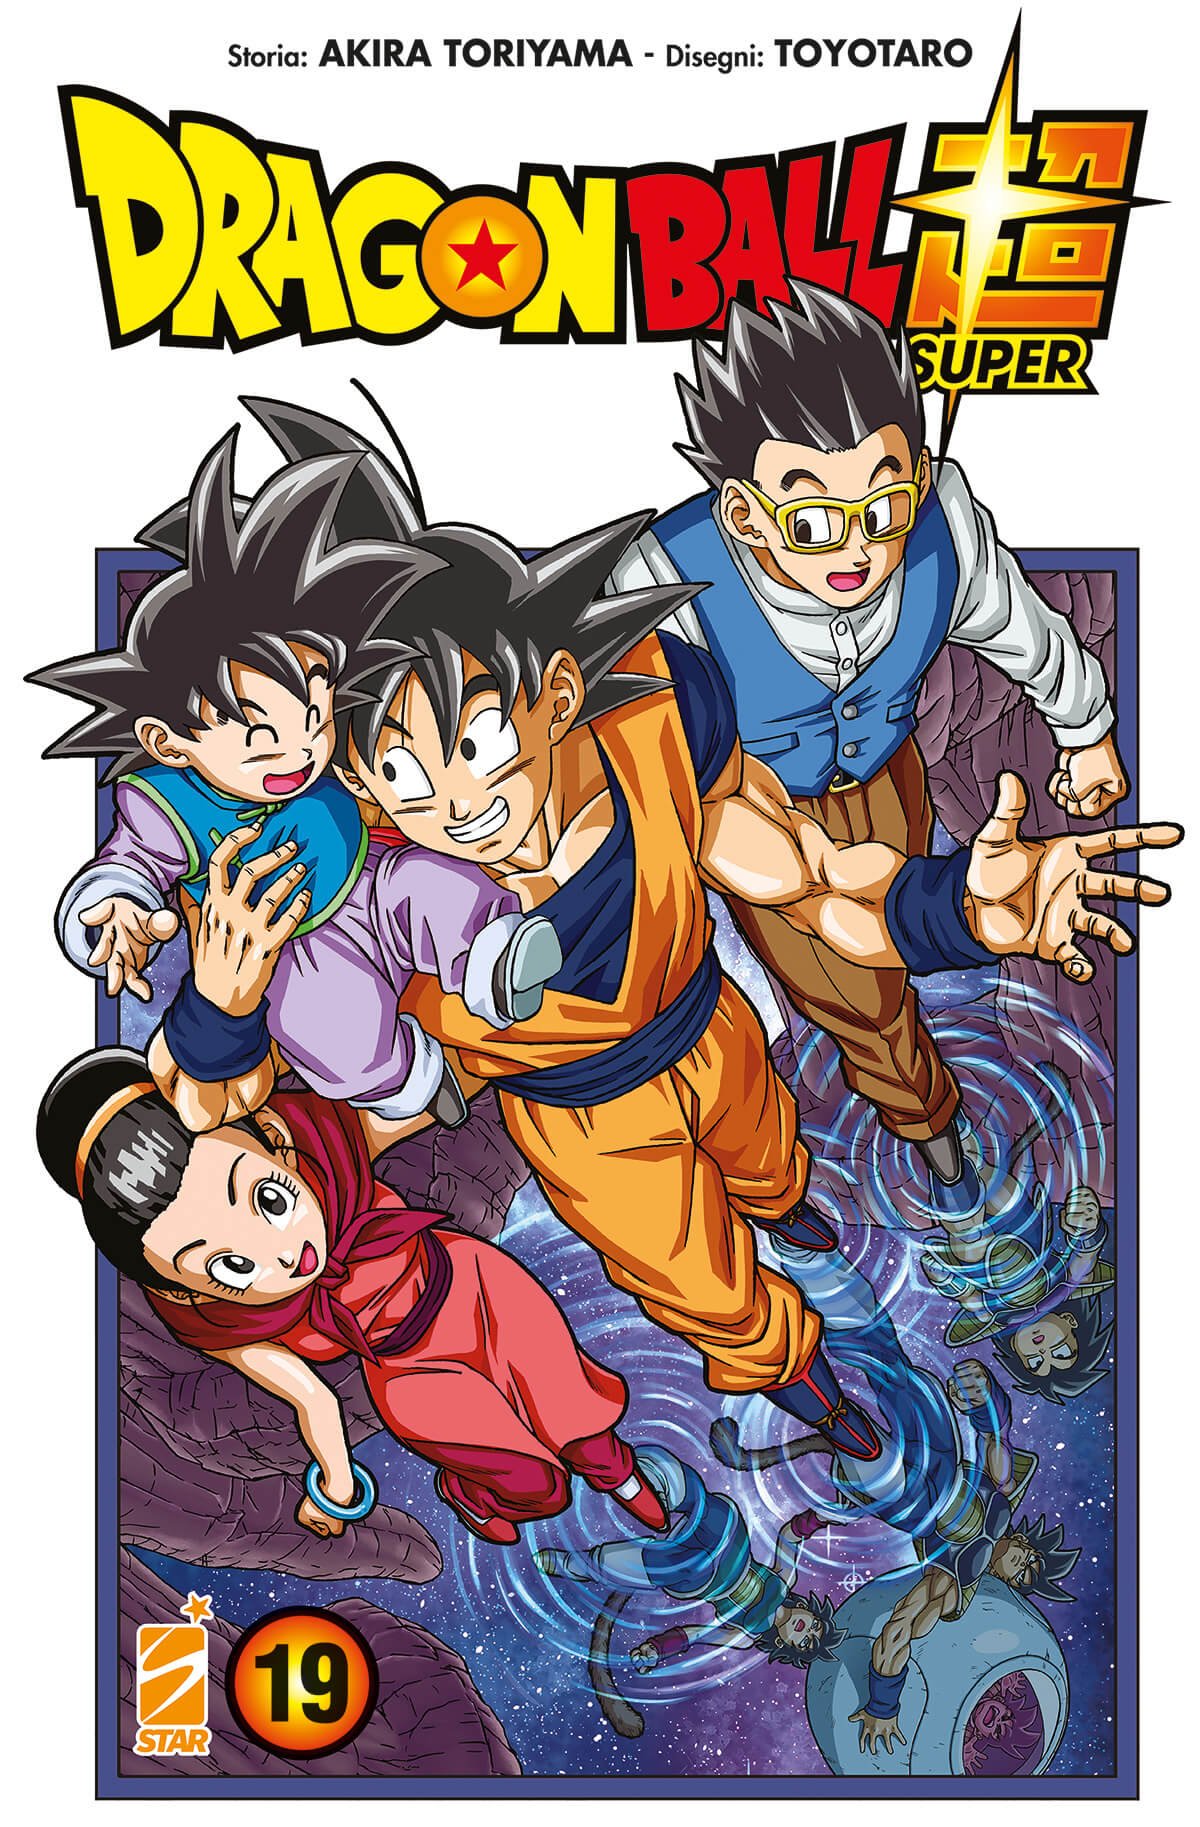 Dragon Ball Super 19, parmi les sorties mangas Star Comics du 24 mai 2023.